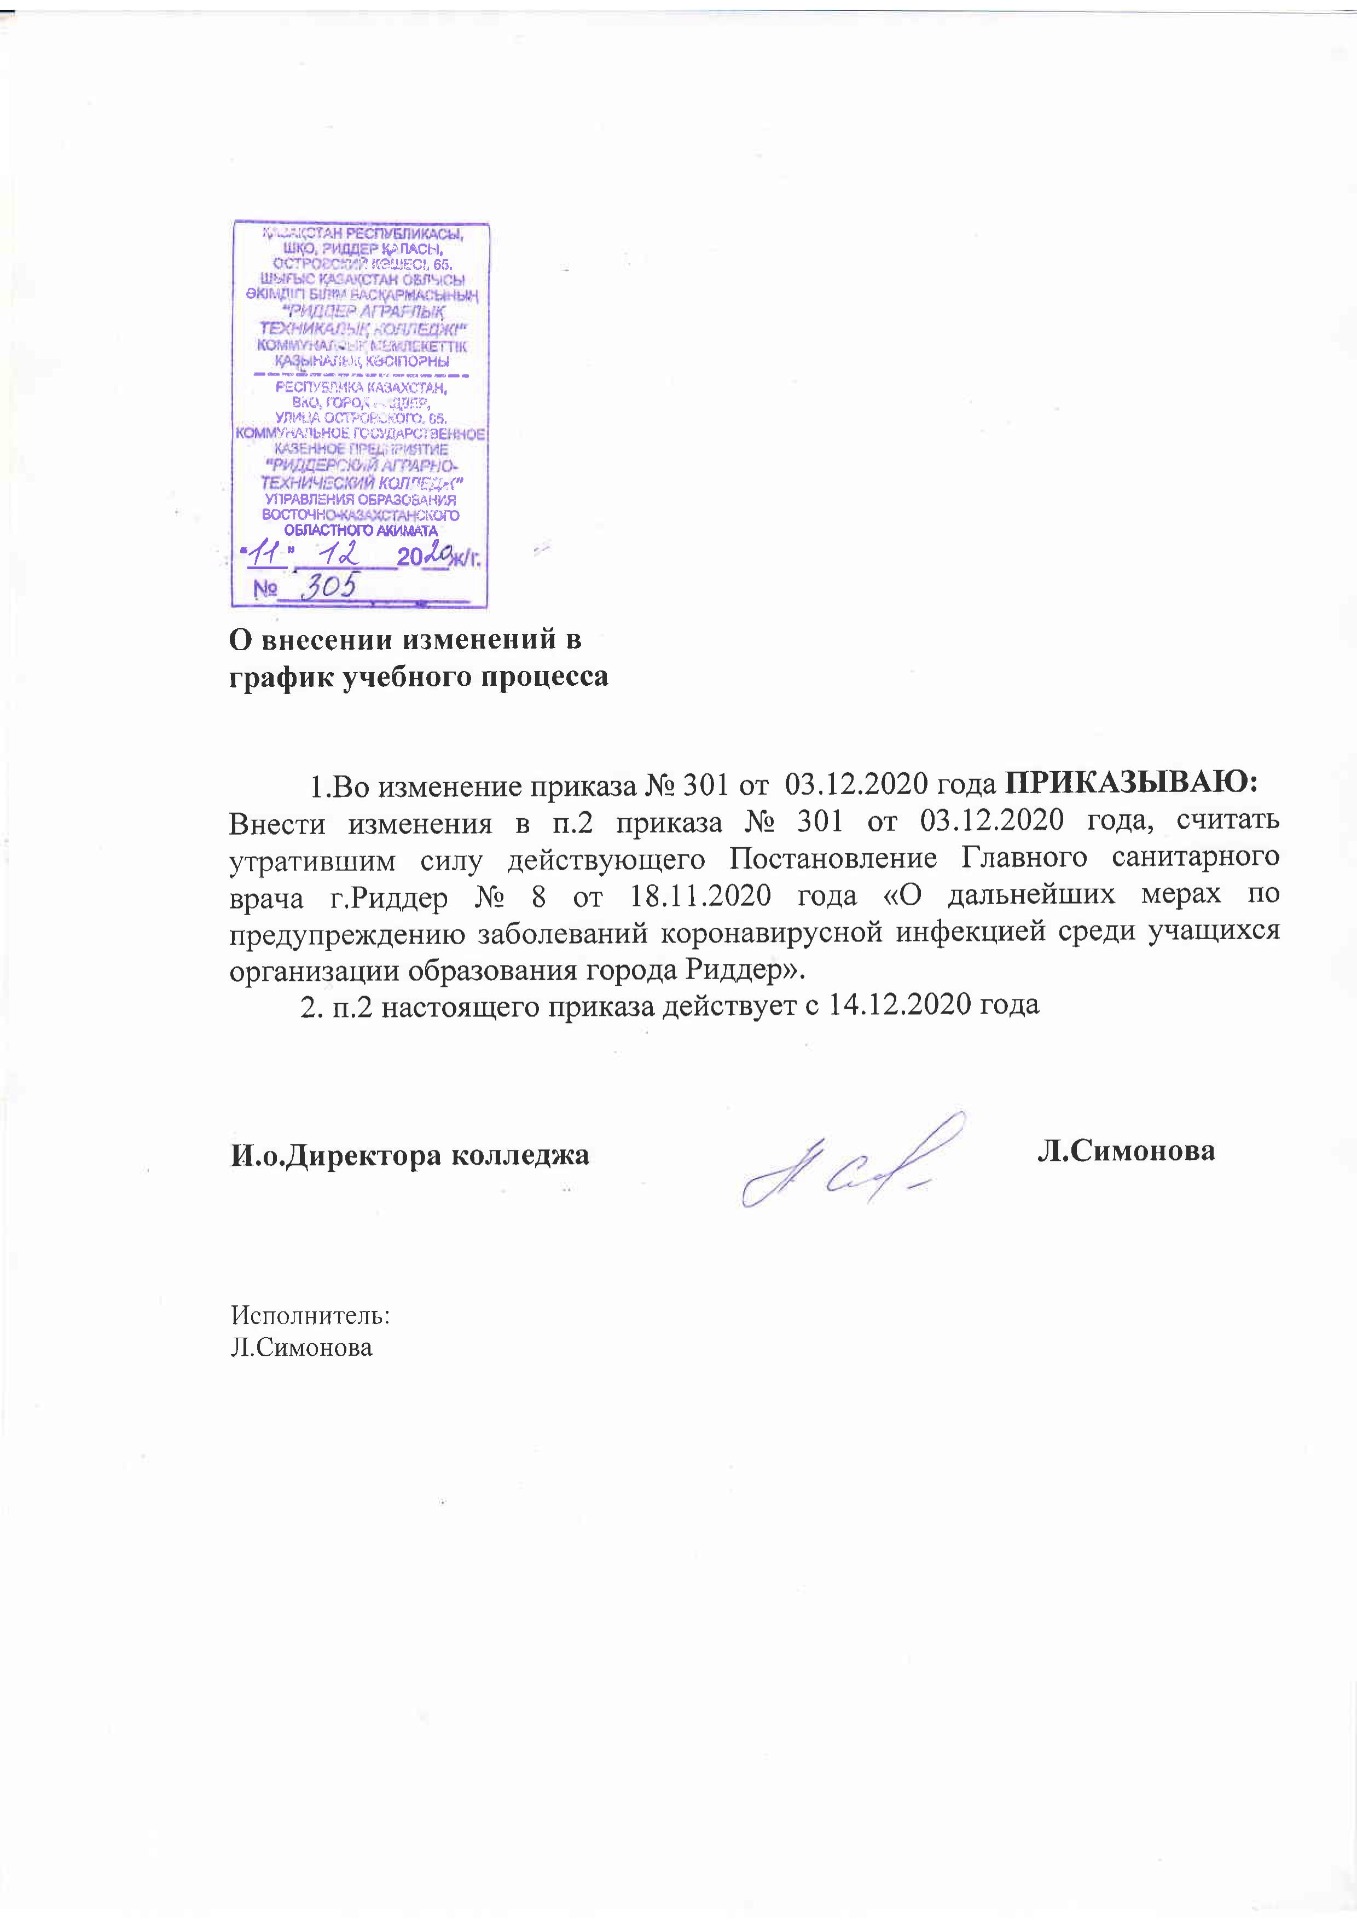 Приказ о внесении изменений в график учебного процесса от 11.12.2020 - Картинка 1